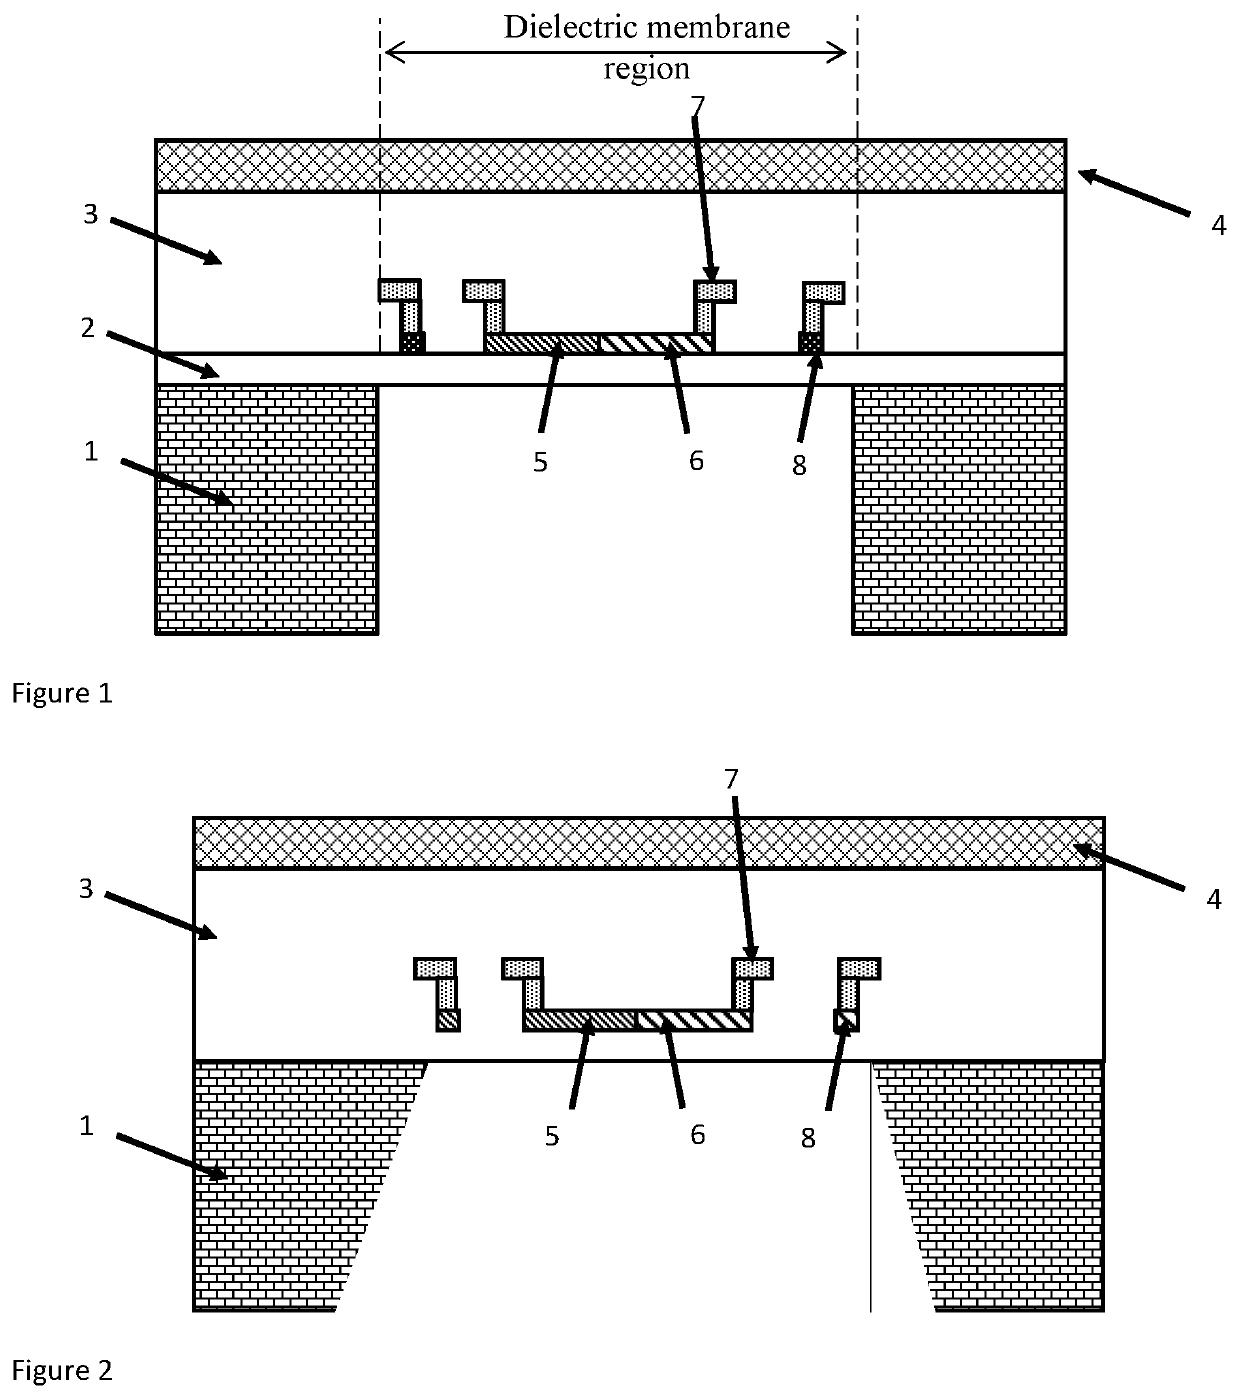 A single membrane flow-pressure sensing device